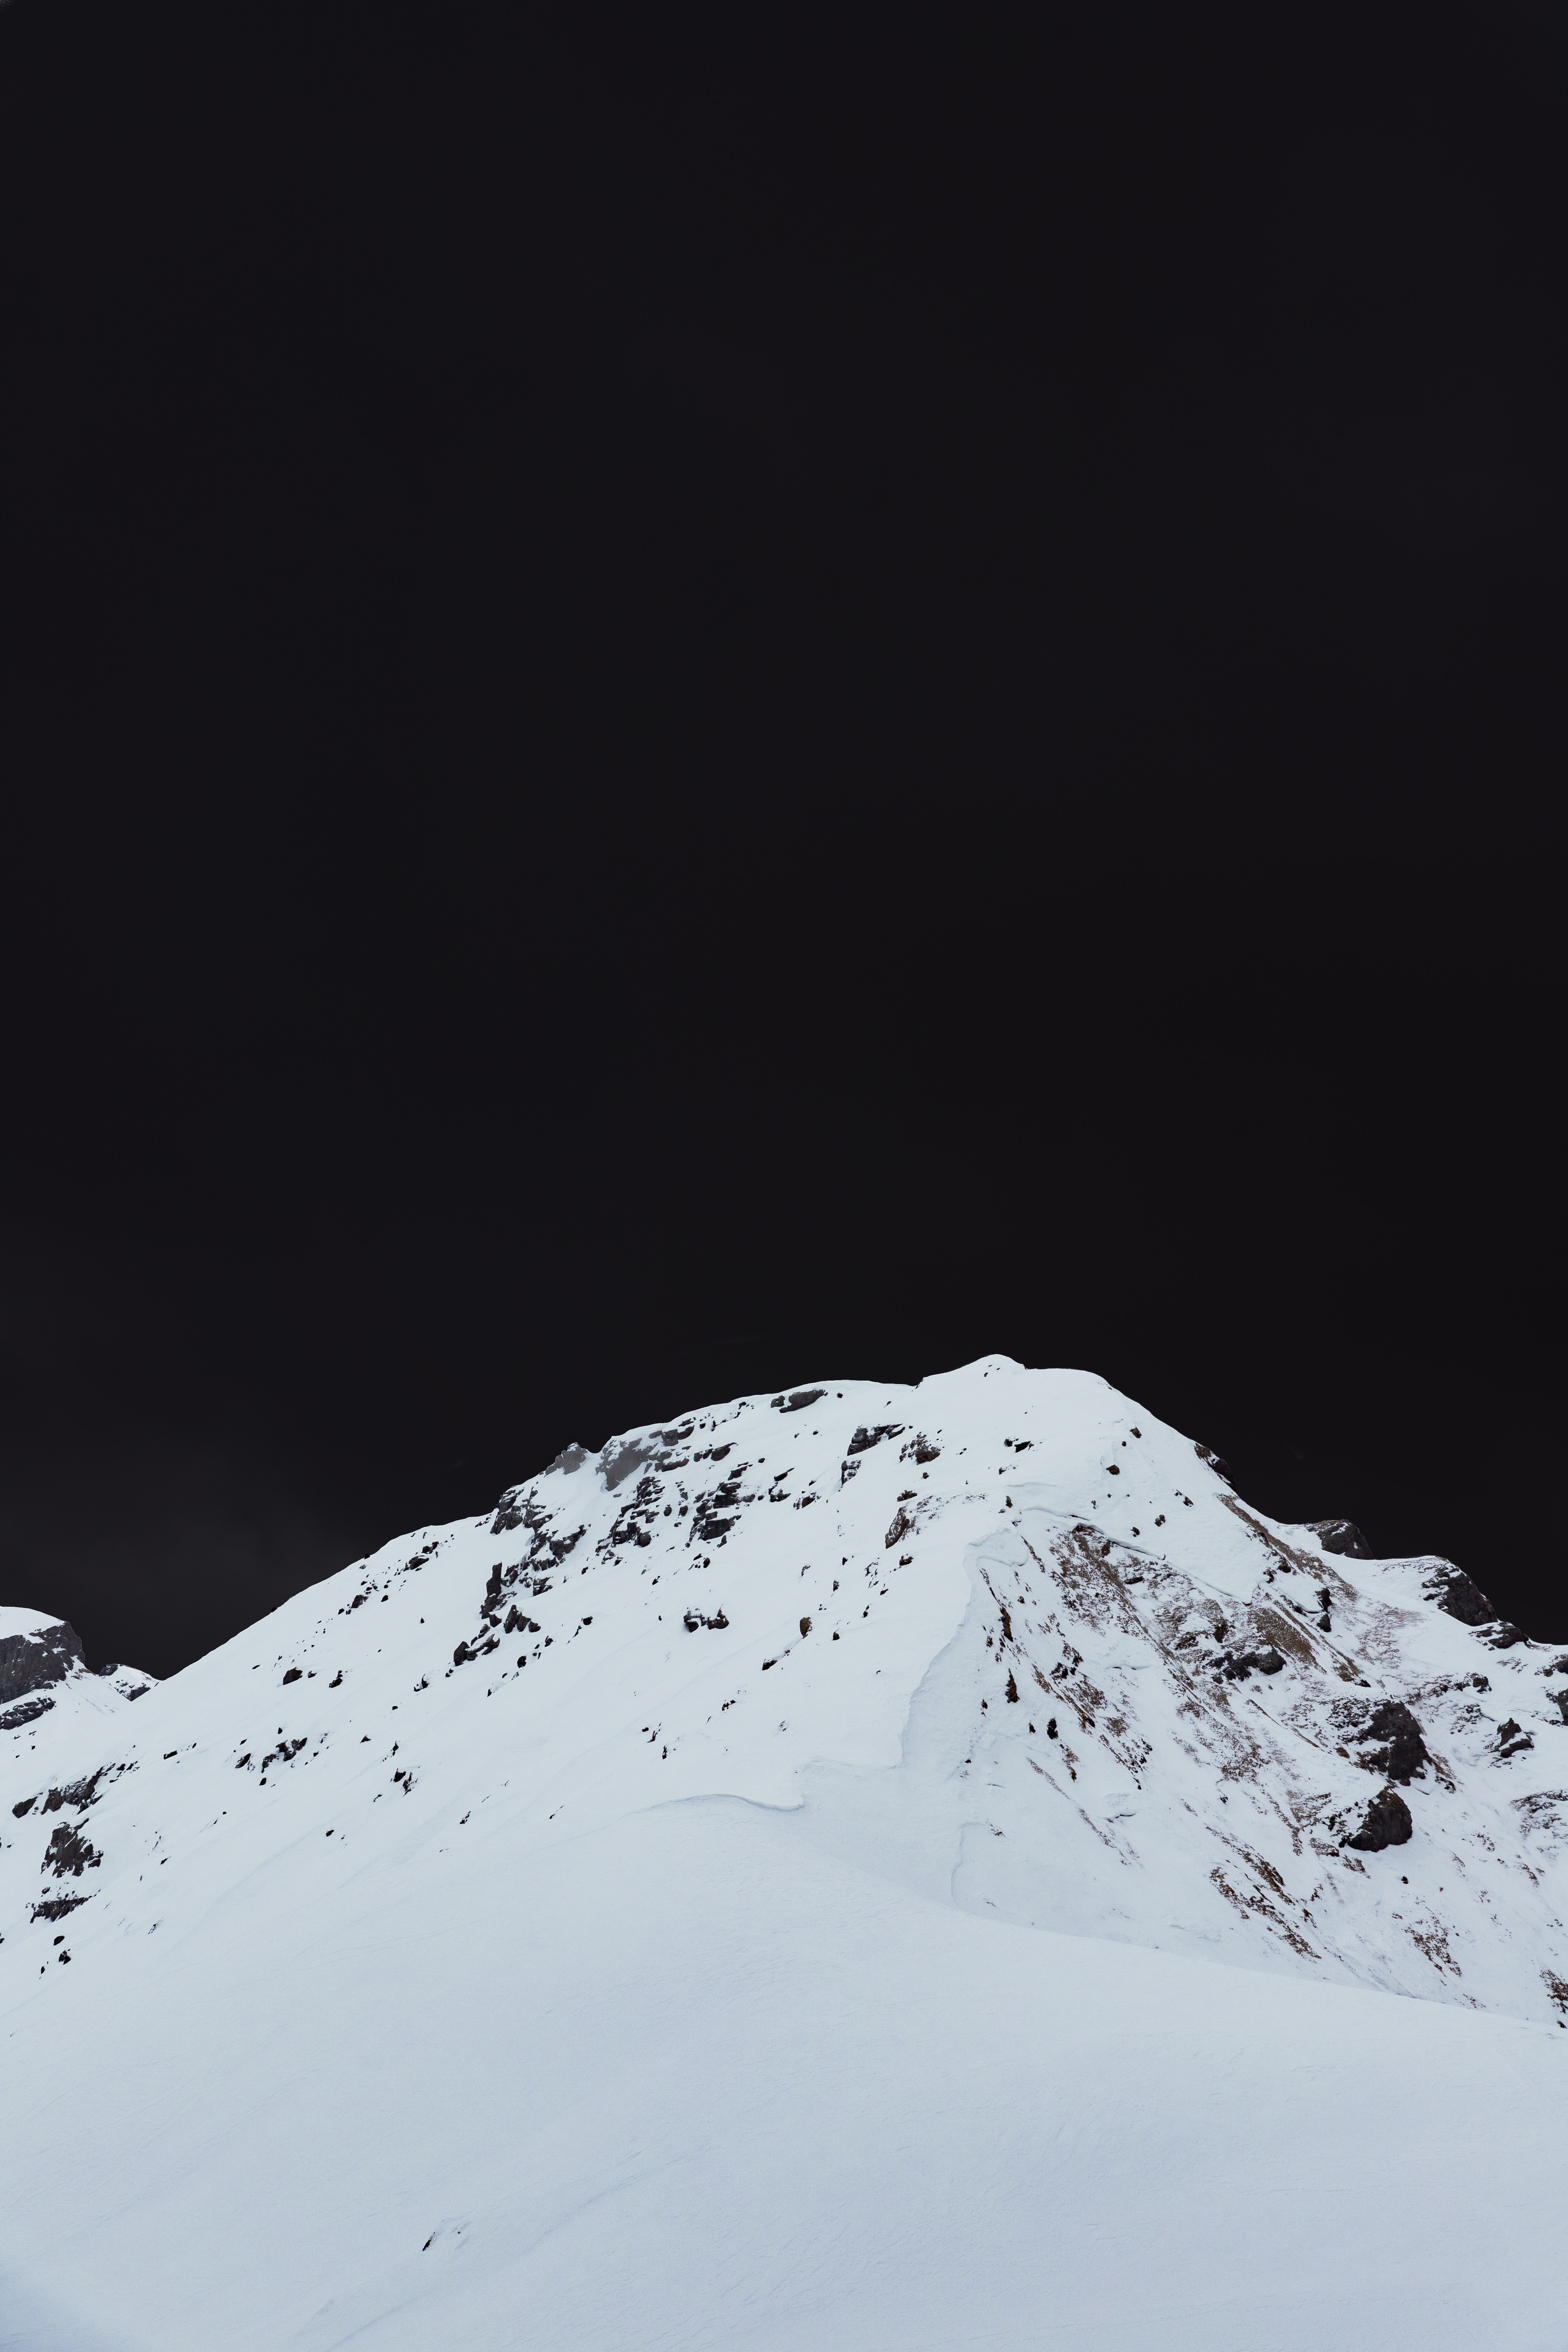 Download wallpaper 4160x6240 mountain, peak, snowy, landscape, winter HD background